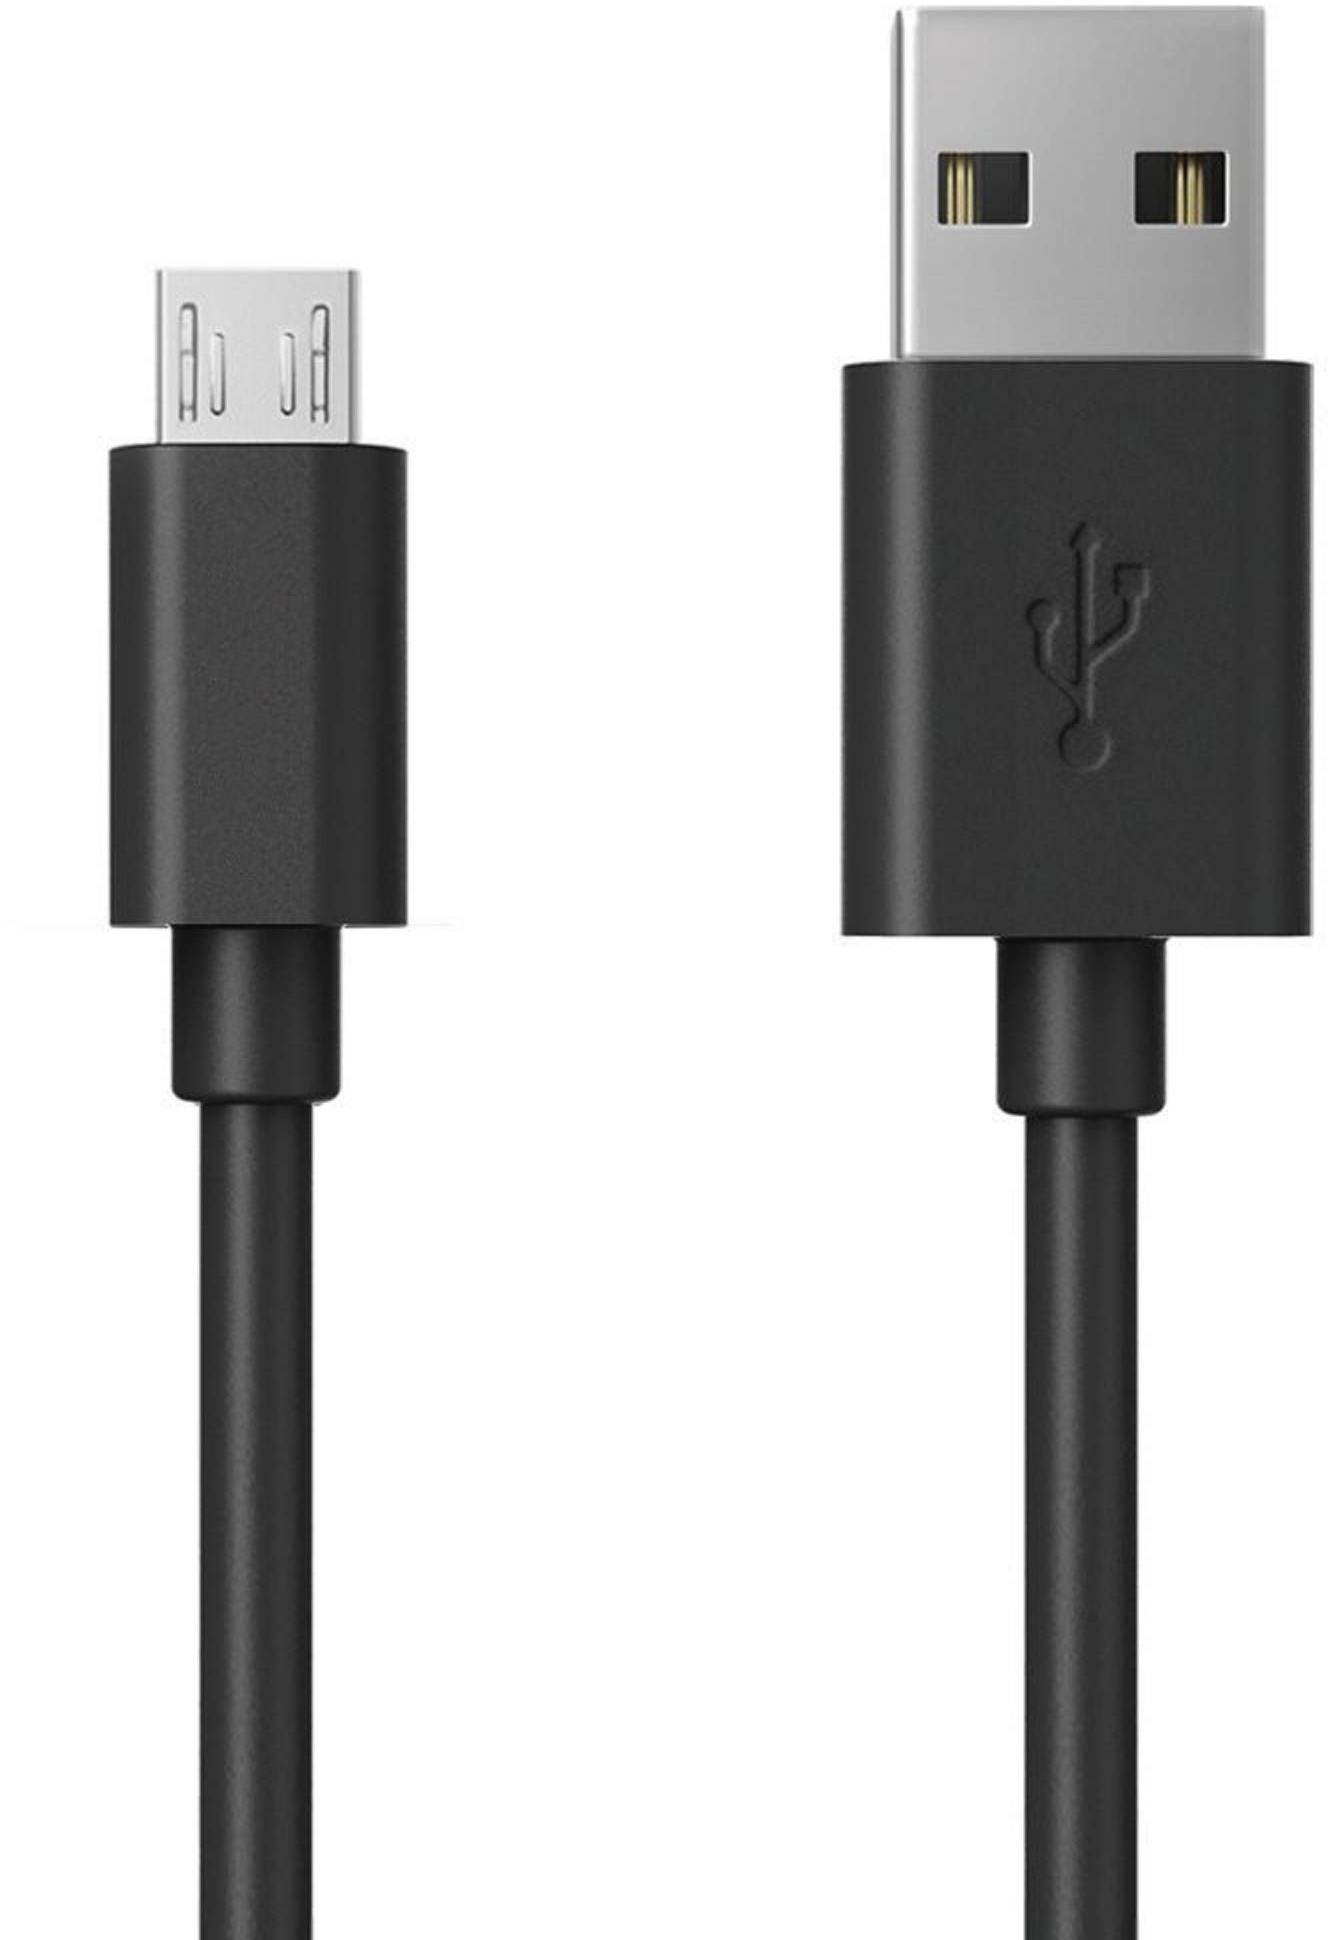 RealPower Micro-USB-Ladekabel, 60 cm, Micro-USB-Lade- und Sync-Kabel, geeignet für Android-Smartphones, Samsung Galaxy, HTC, Huawei, Sony, Nexus, Kindle und mehr, Schwarz, 1 Stück